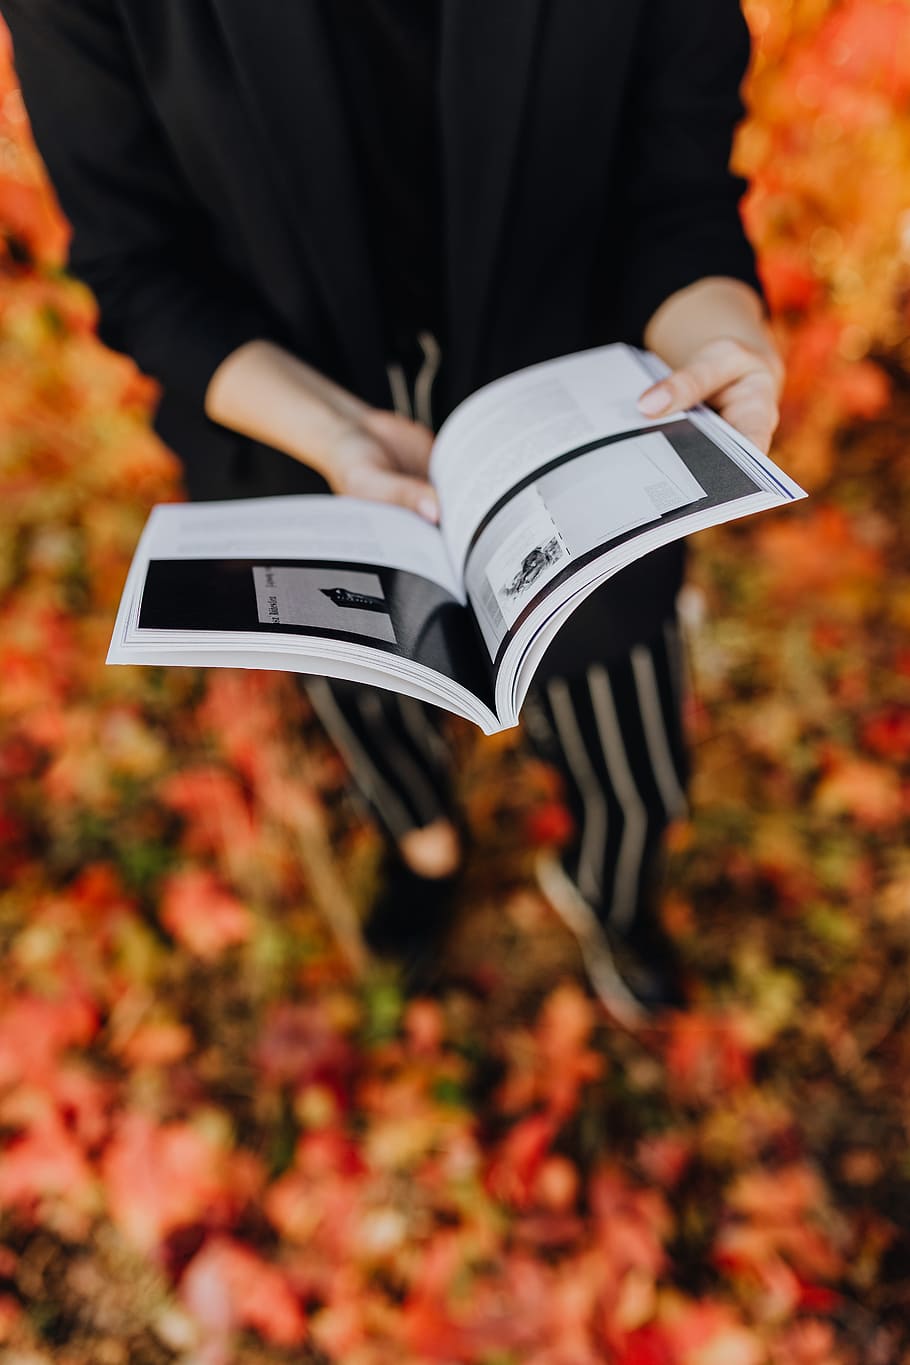 девушка, книга Grafconf, задний план, Красочный, листья, книга, Grafconf, Grafconf 2017, женщина, читатель